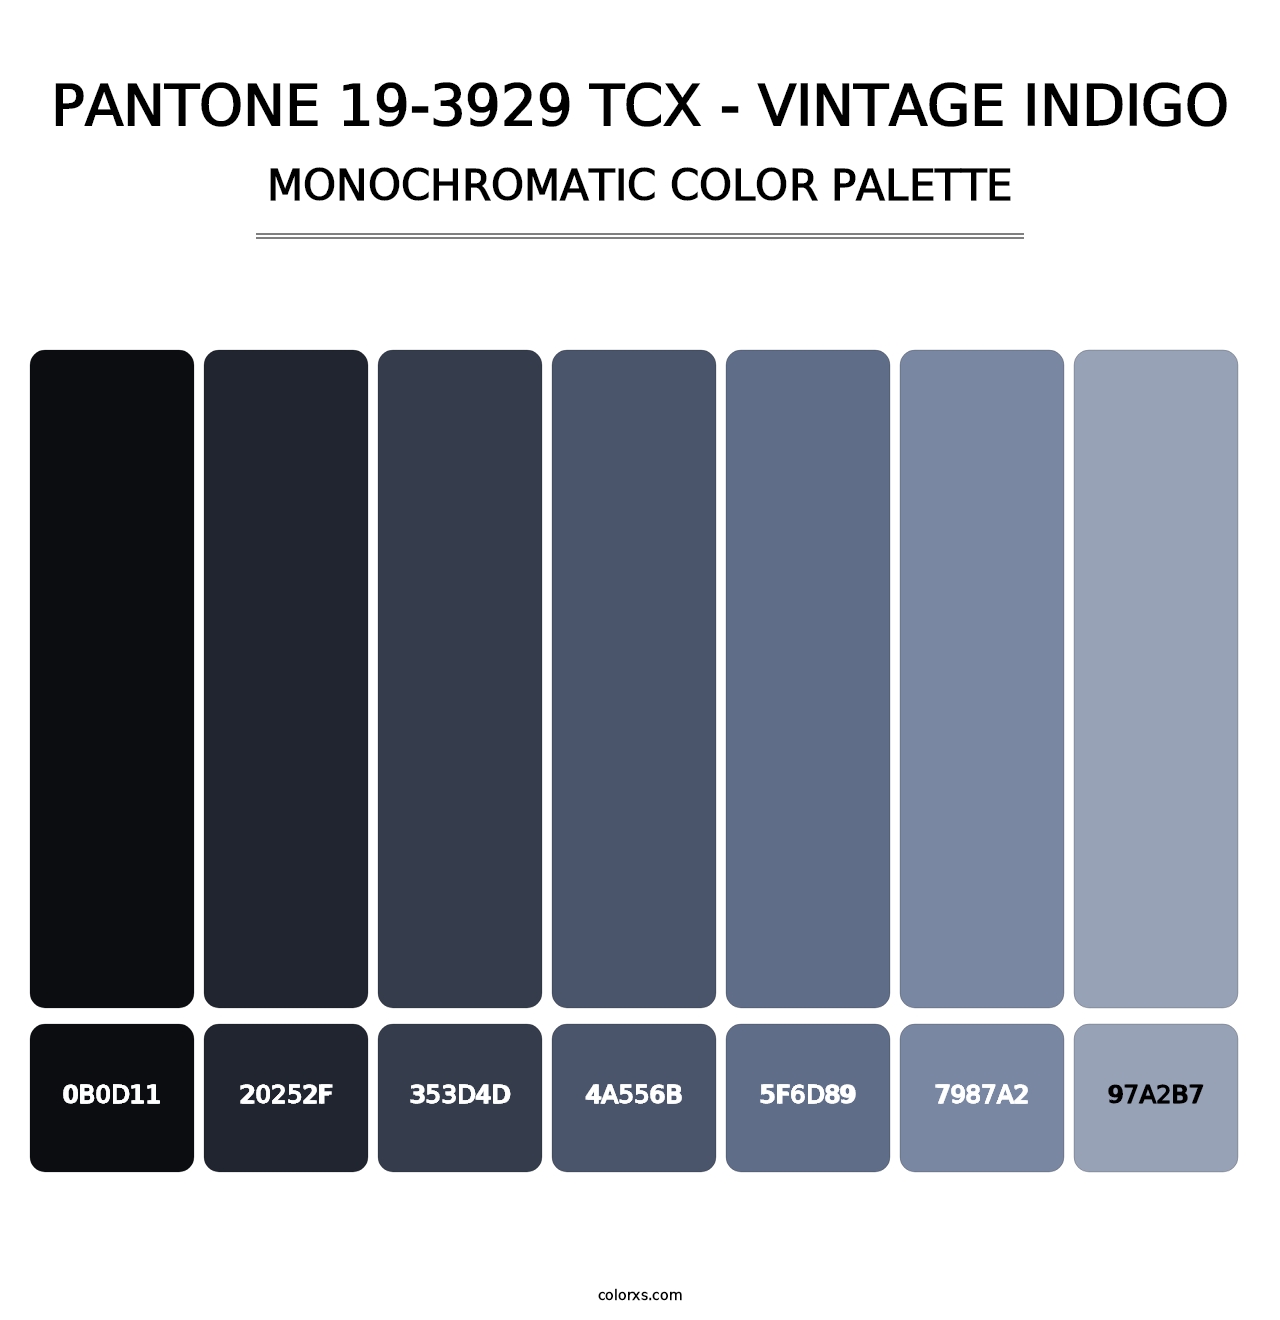 PANTONE 19-3929 TCX - Vintage Indigo - Monochromatic Color Palette